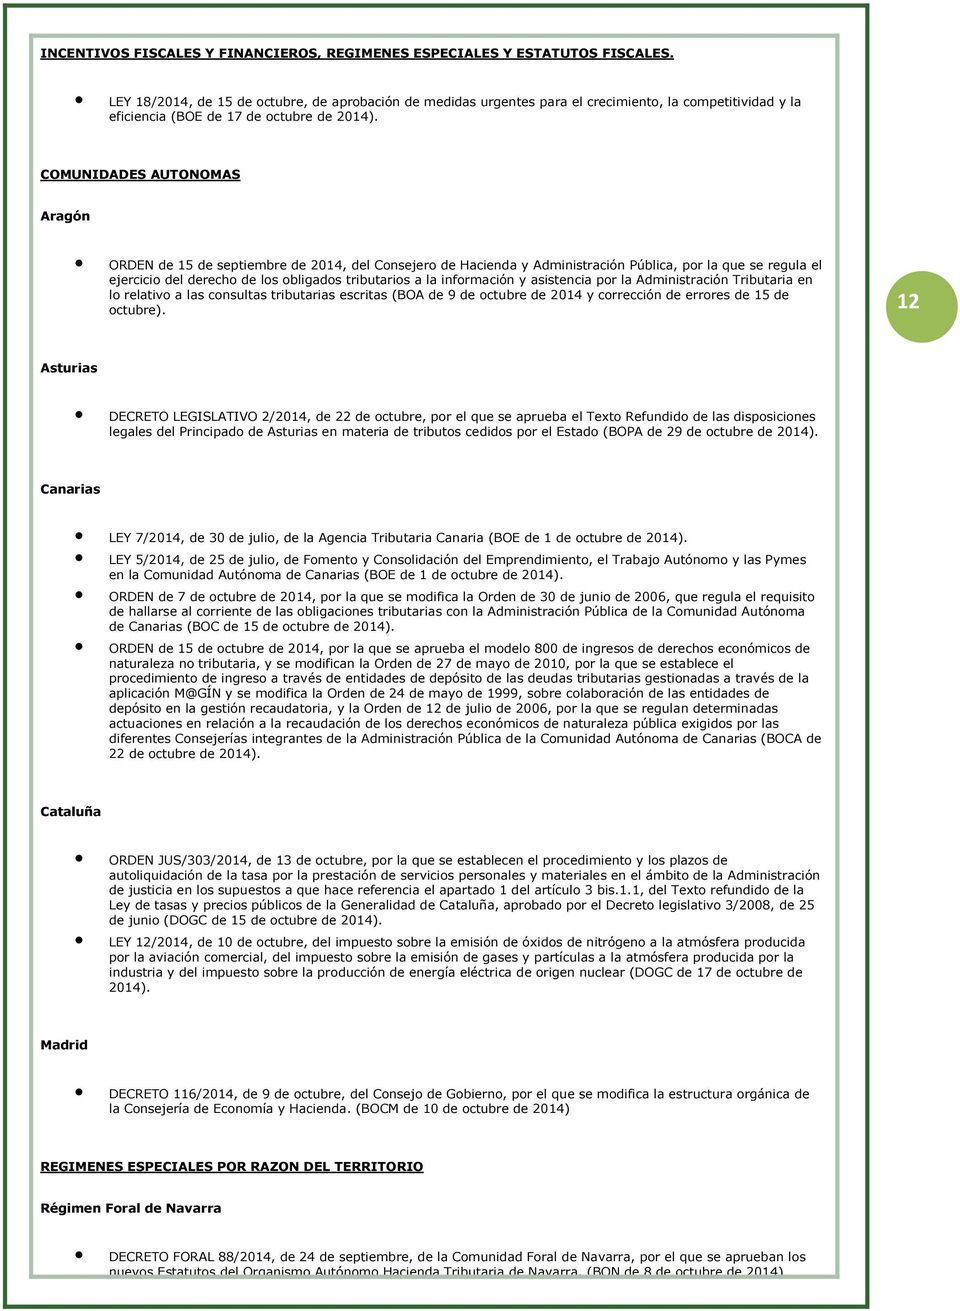 COMUNIDADES AUTONOMAS Aragón ORDEN de 15 de septiembre de 2014, del Cnsejer de Hacienda y Administración Pública, pr la que se regula el ejercici del derech de ls bligads tributaris a la infrmación y